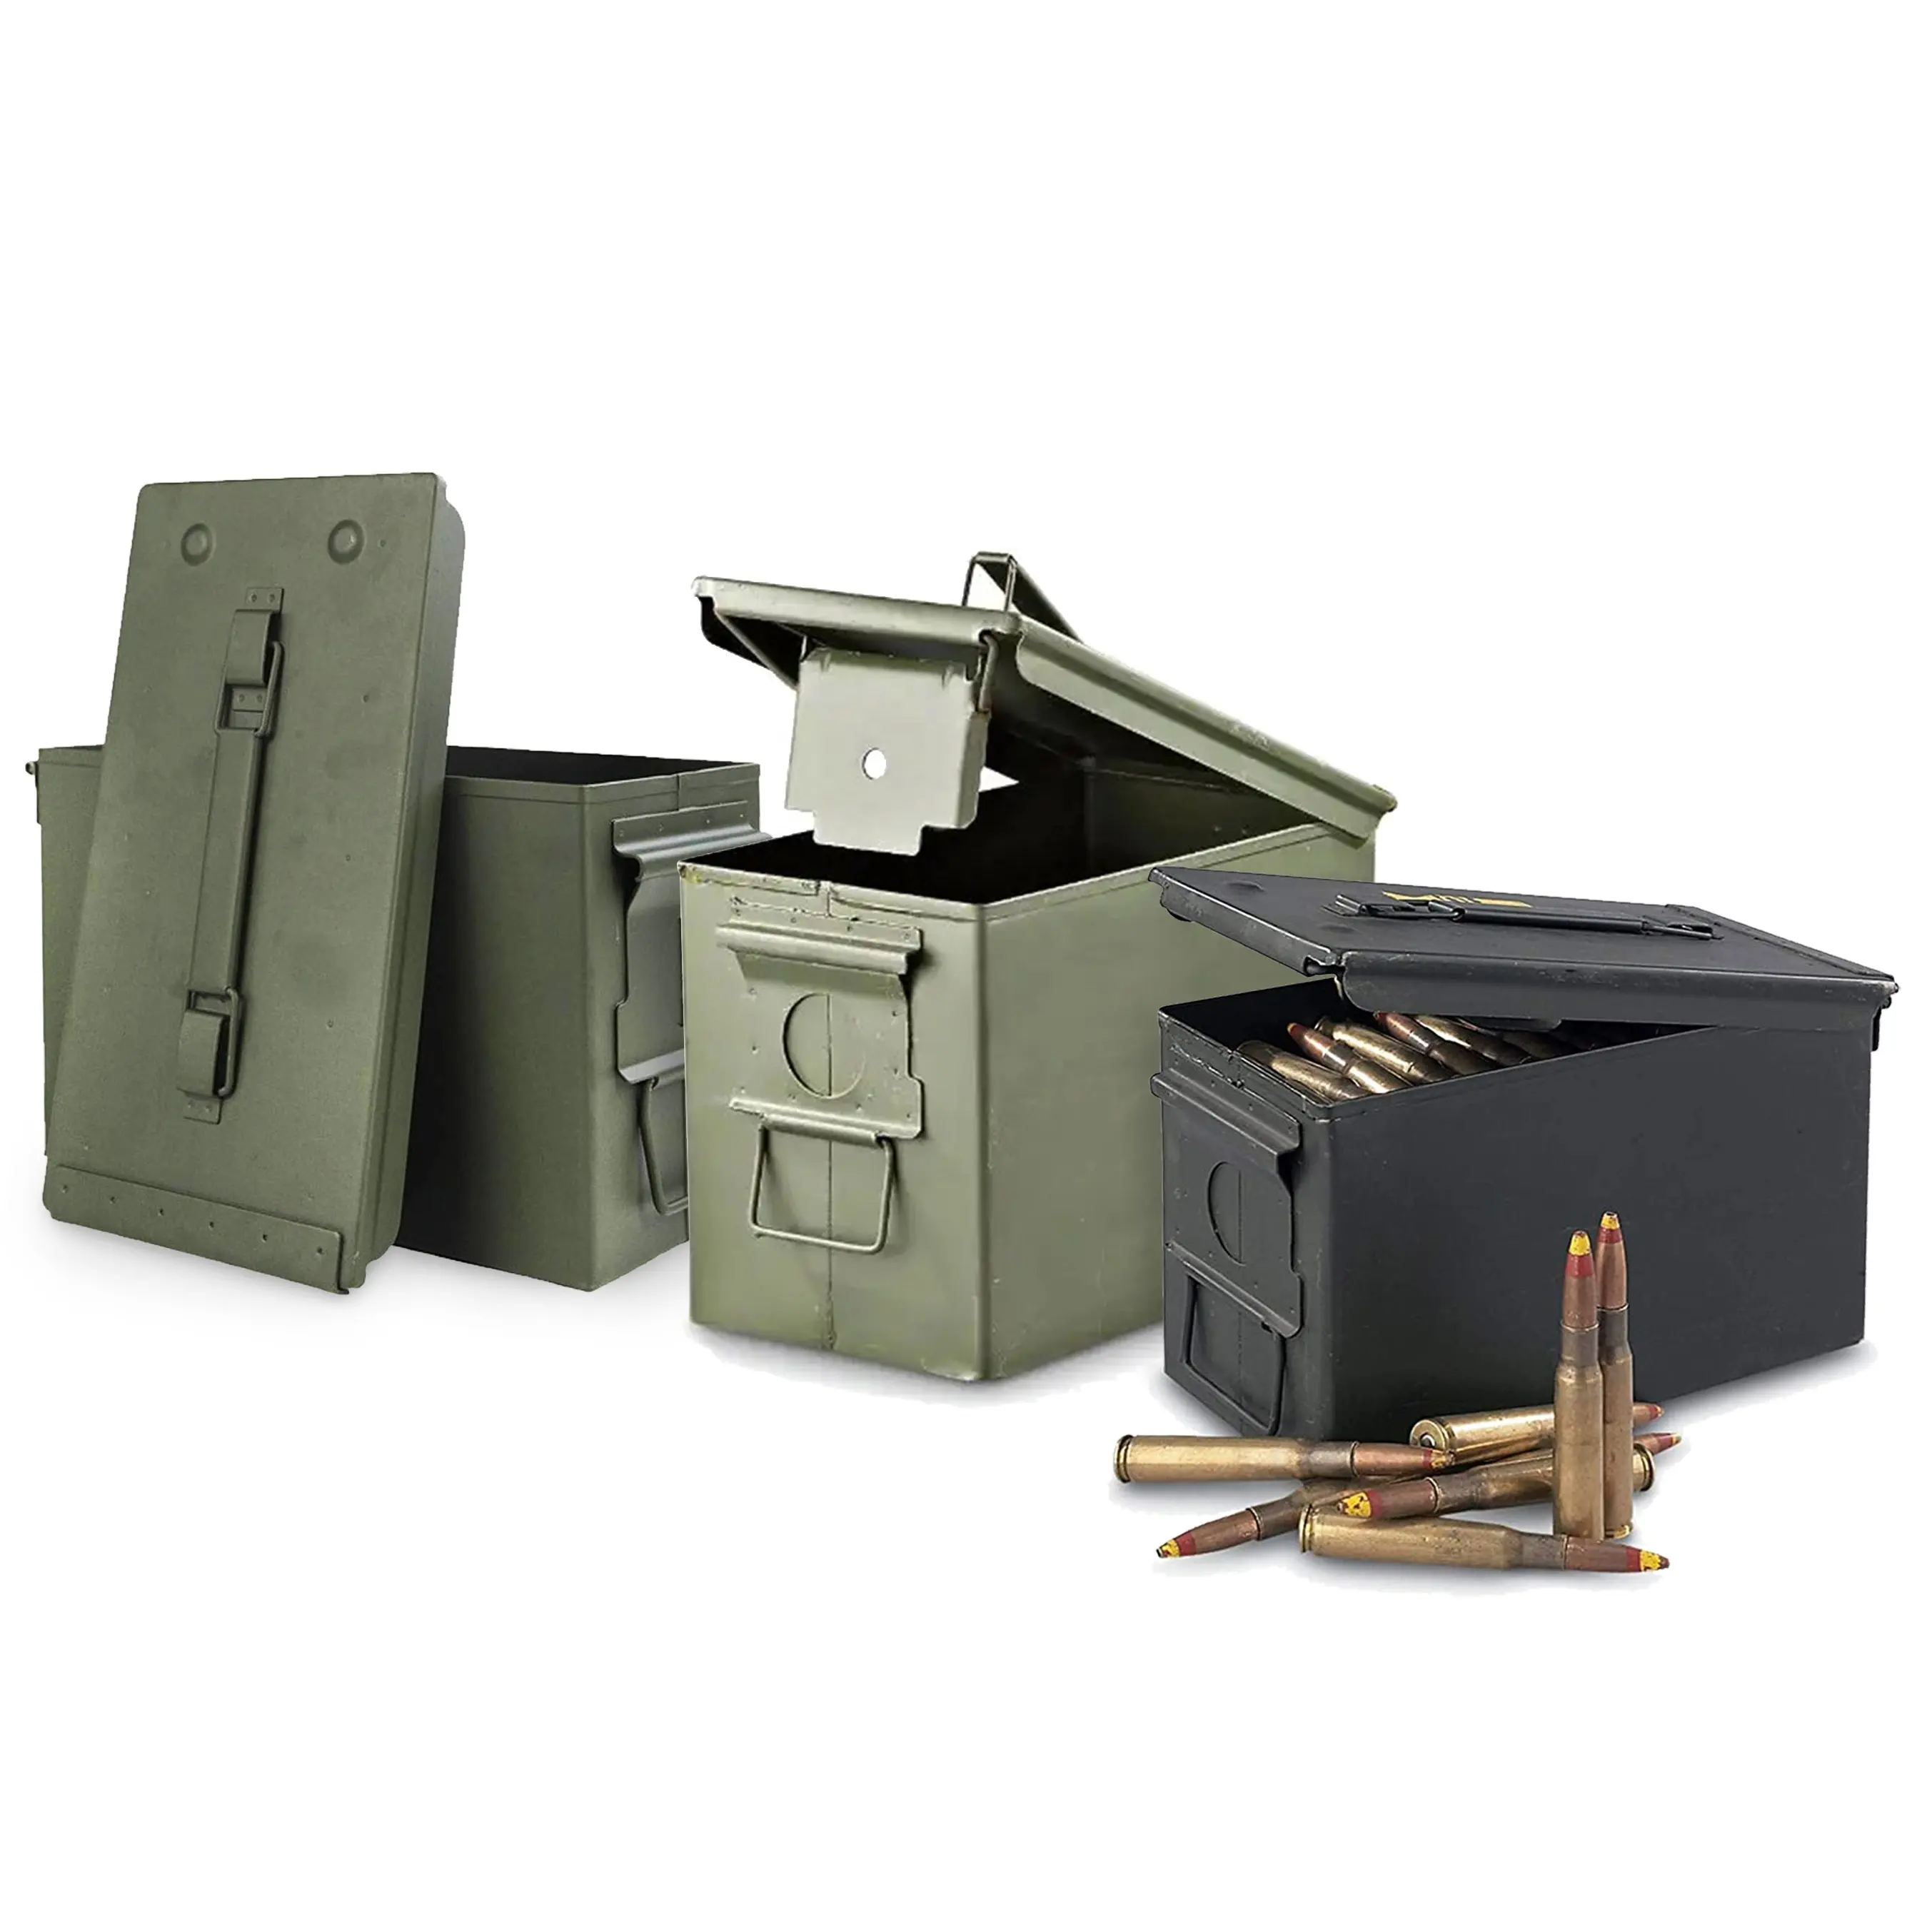 Caja fuerte de almacenamiento personalizada M2A1 50 cal, contenedor de lata de acero y Metal de munición de 9mm